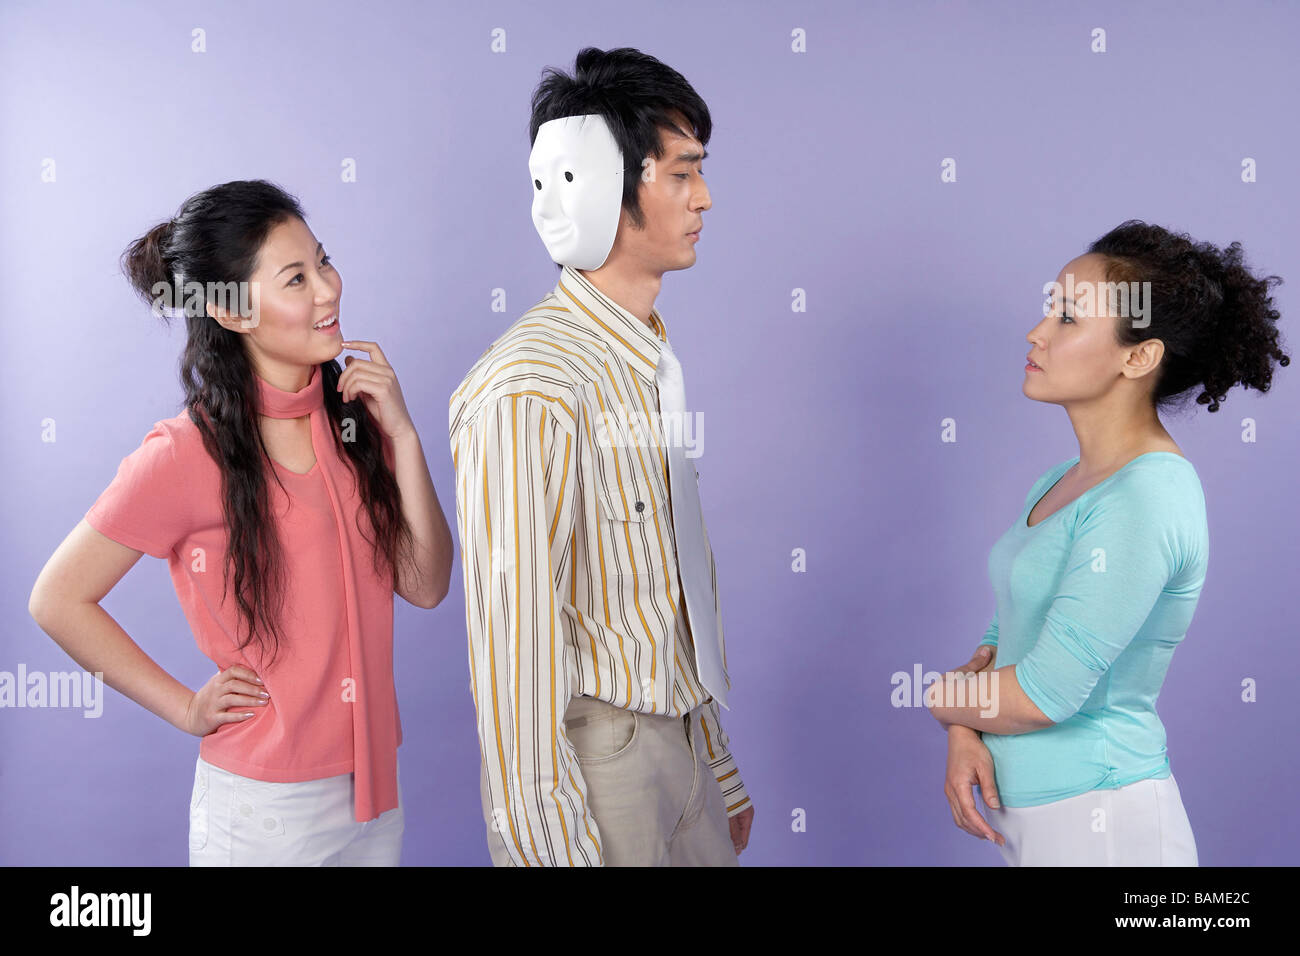 Junge Frauen im Gespräch mit einem Two-faced Mann Stockfoto